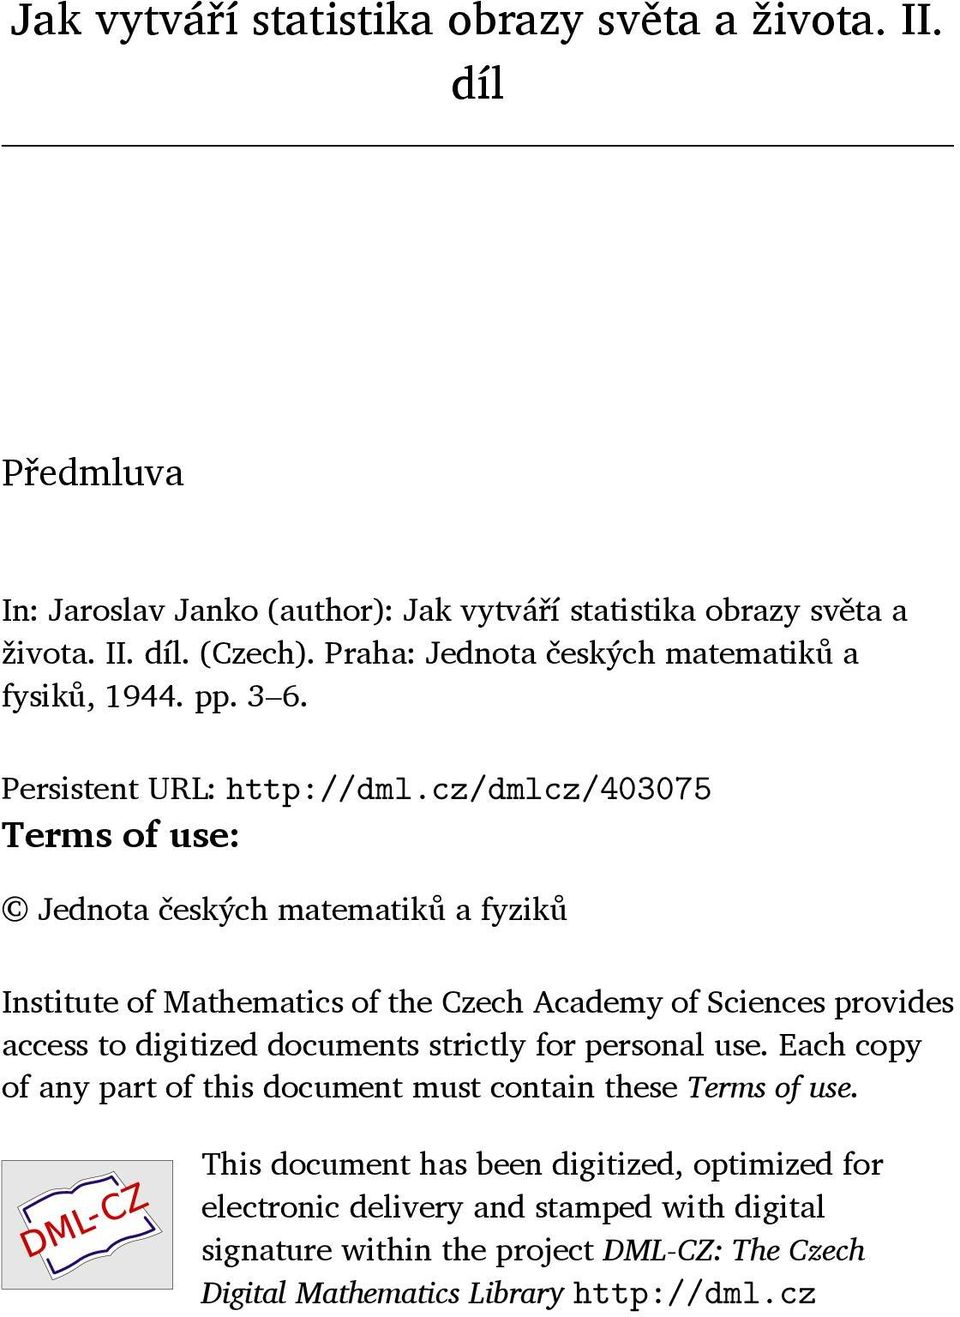 cz/dmlcz/403075 Terms of use: Jednota českých matematiků a fyziků Institute of Mathematics of the Czech Academy of Sciences provides access to digitized documents strictly